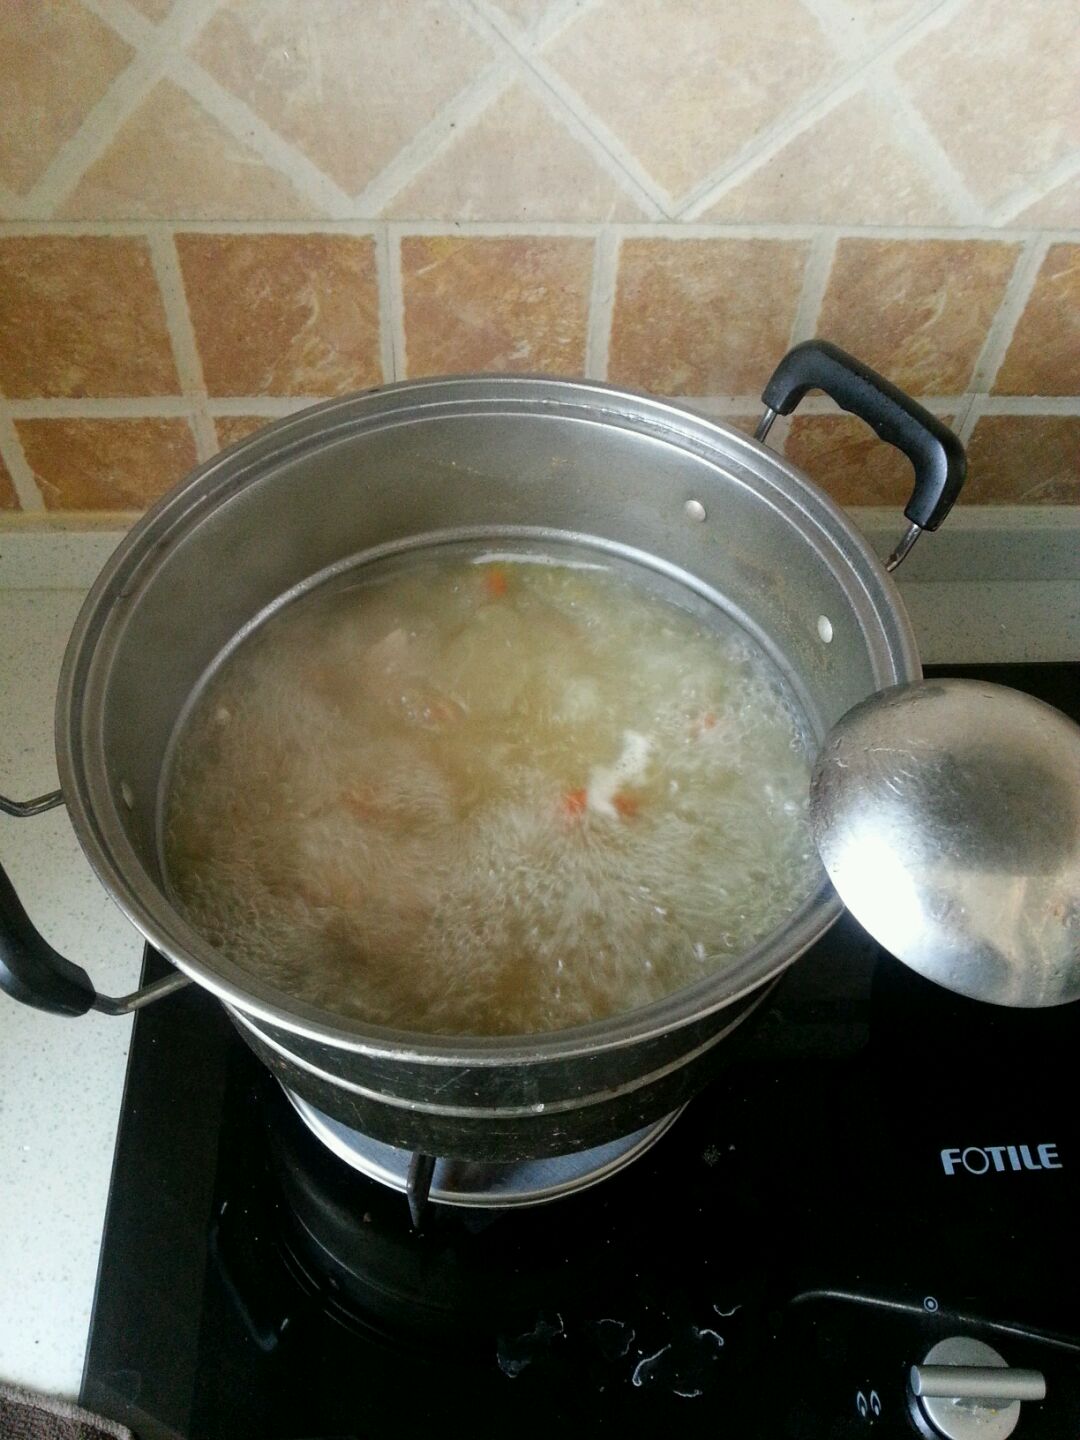 注意,煮开后发现汤不多,想多煮些汤,一定要加热水,千万不要加凉水